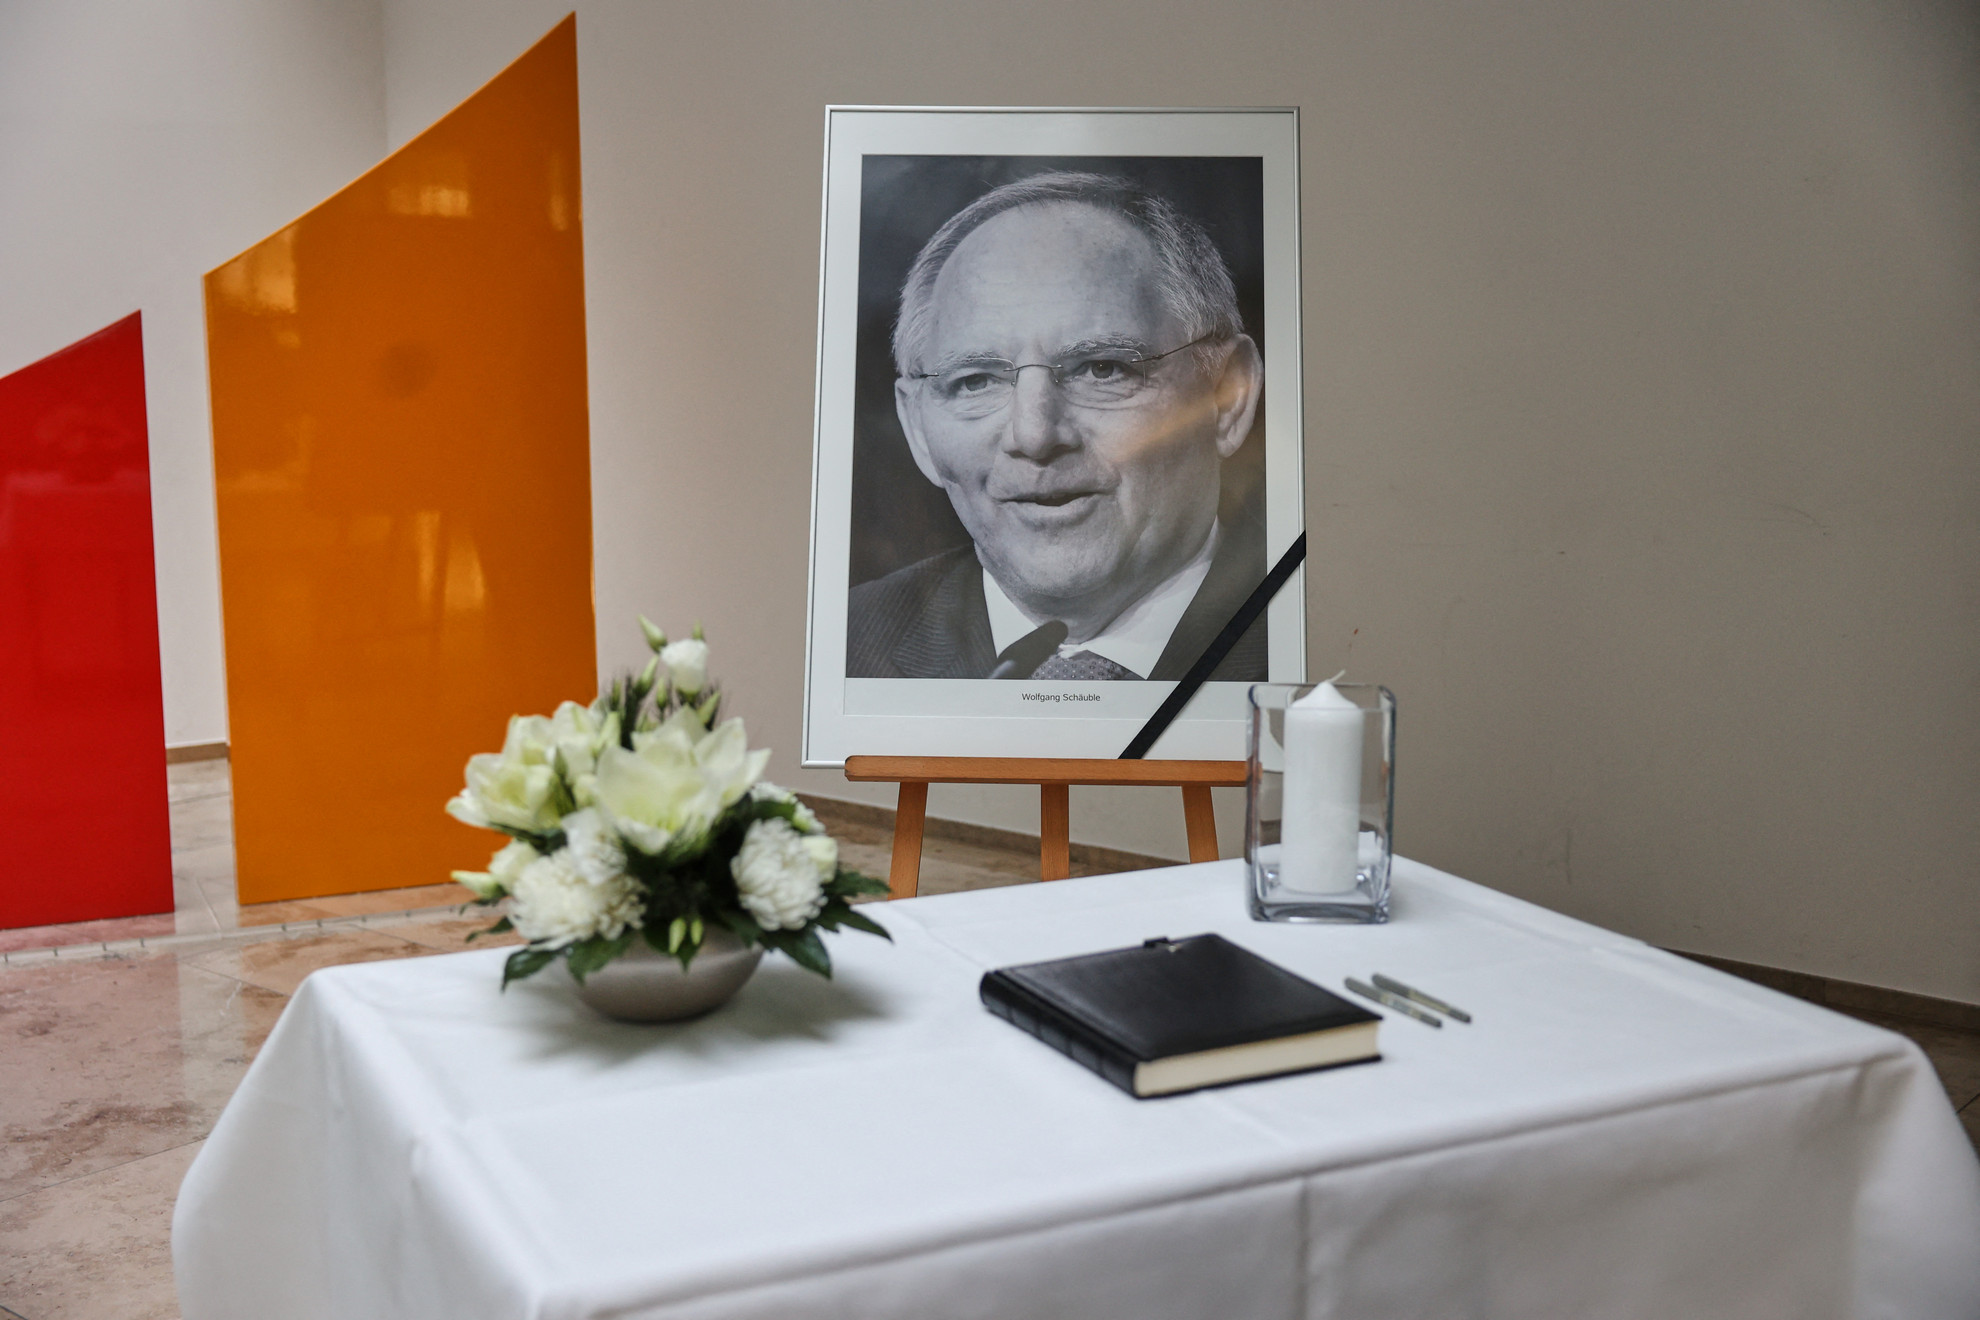 81 éves korában elhunyt a Bundestag egykori elnöke, a CDU vezetője, Wolfgang Schäuble. 2023. december 26-án este békésen elaludt otthonában, családja körében. A politikust 1990-ben, kilenc nappal az újraegyesítés után egy tébolyult fegyveres golyói megbénították és majdnem megölték, haláláig kerekesszékbe kényszerült